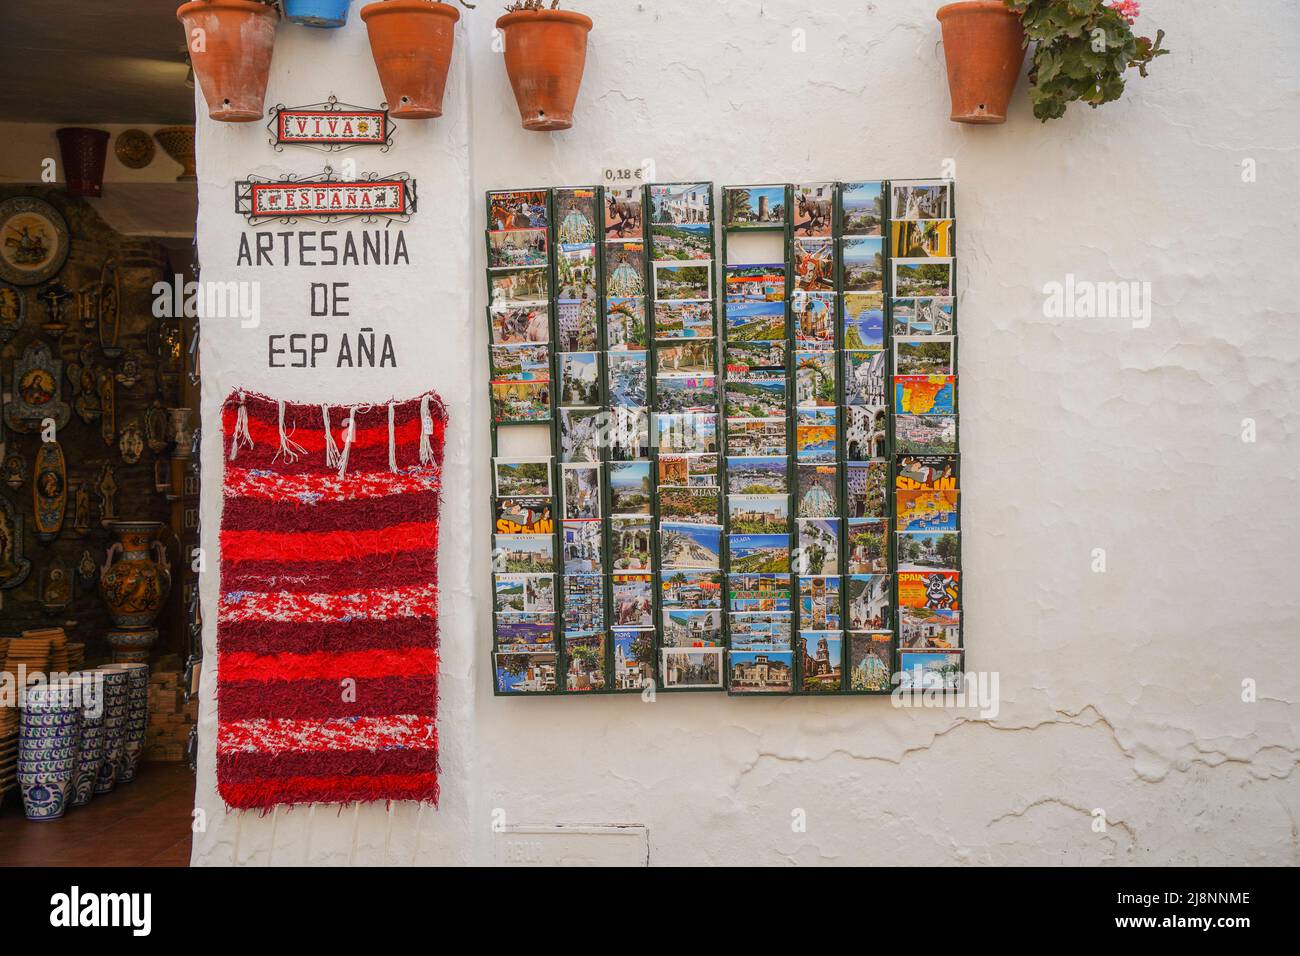 Vieilles cartes postales à la boutique espagnole traditionnelle vendant des céramiques dans le village lavé de Mijas pueblo, Andalousie, province de Malaga, Espagne Banque D'Images